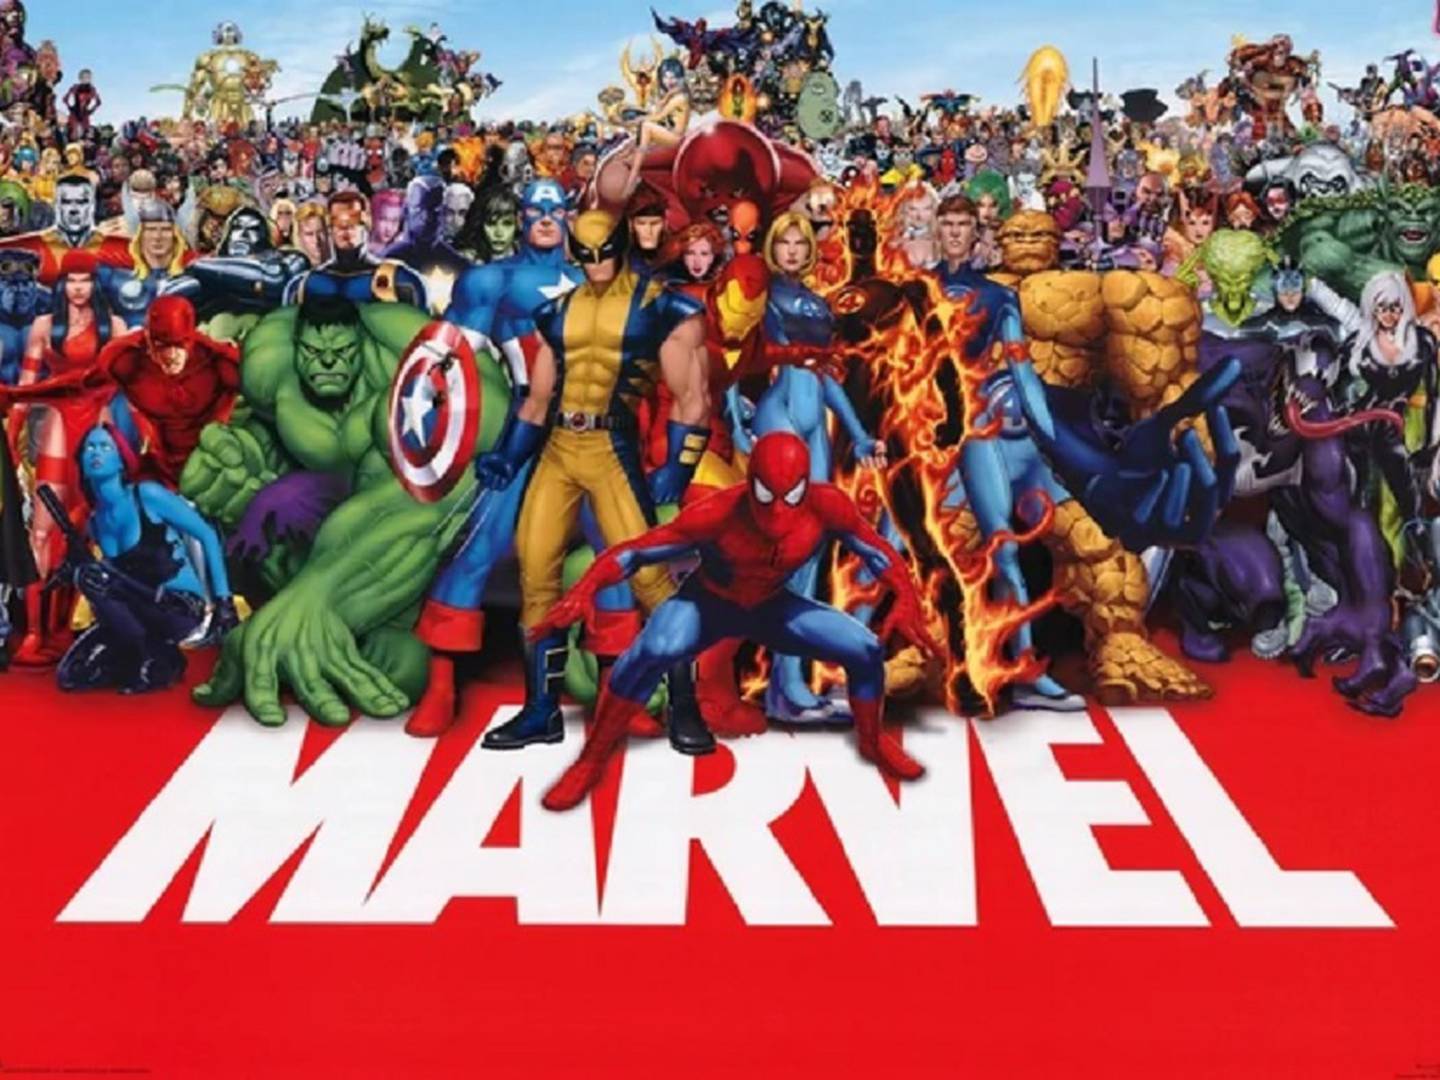 Así serían los superhéroes de los cómics de Marvel en la vida real según inteligencia artificial